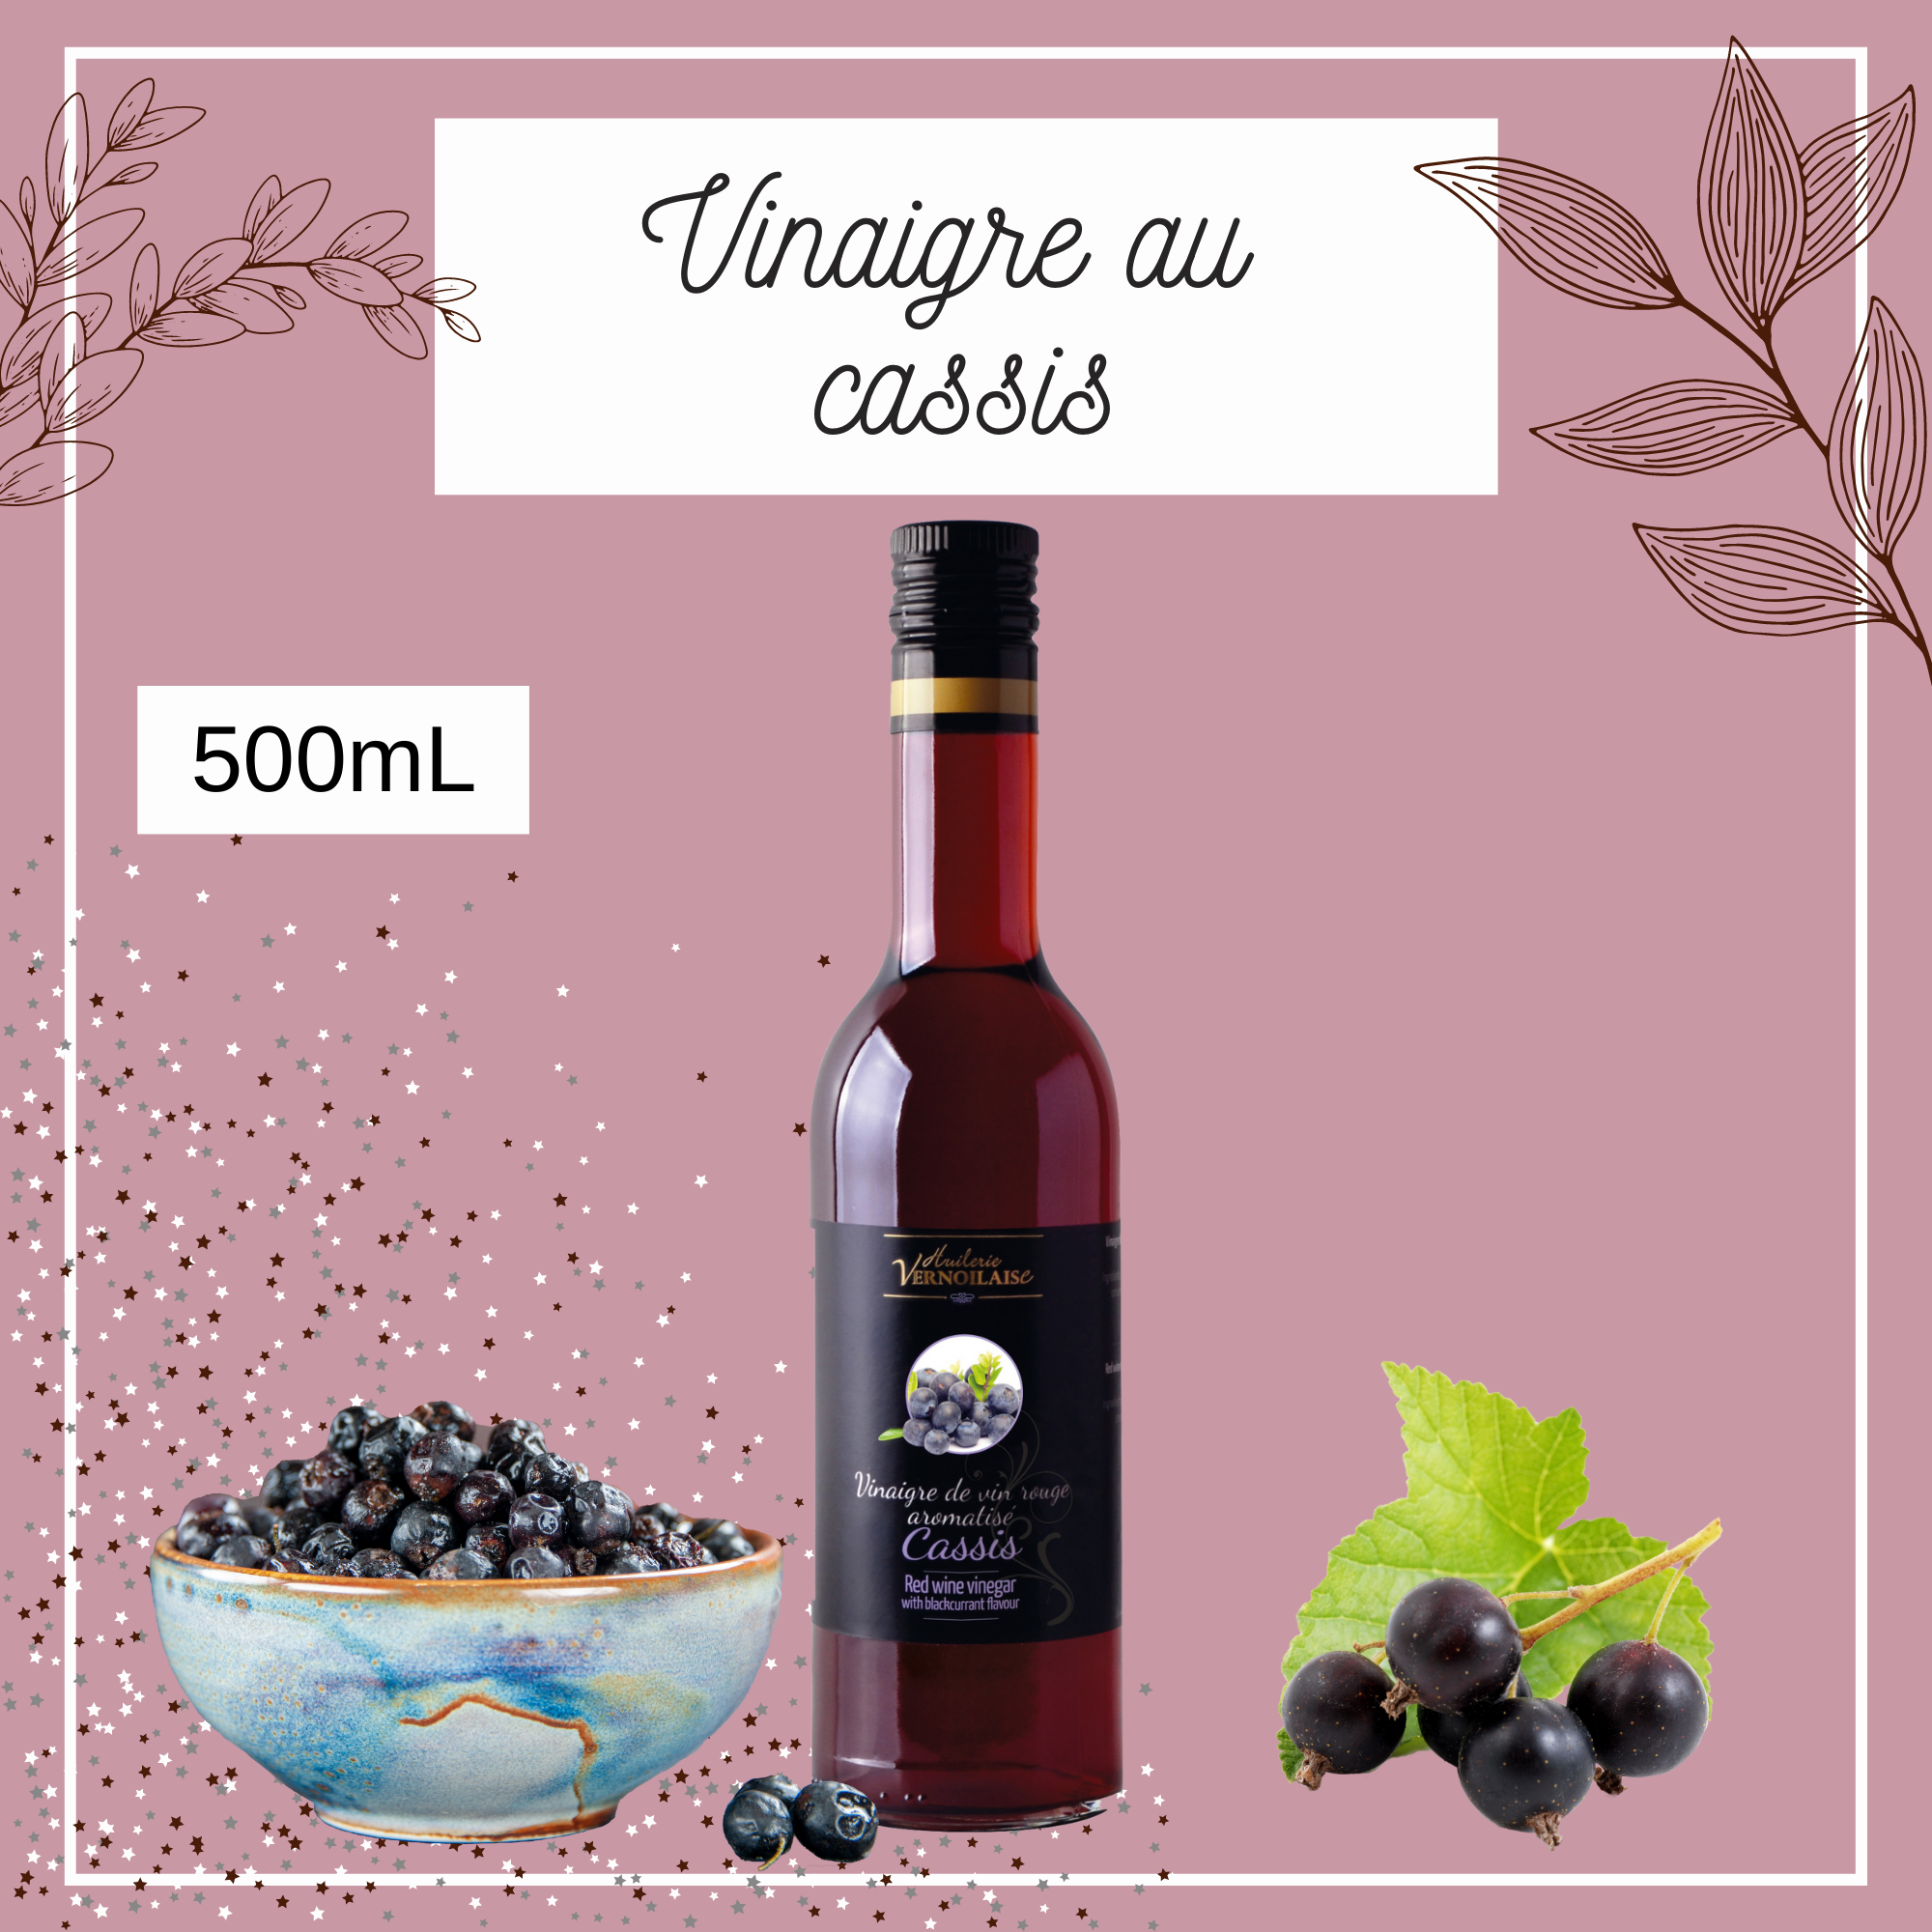 Vinaigre de vin rouge Cassis